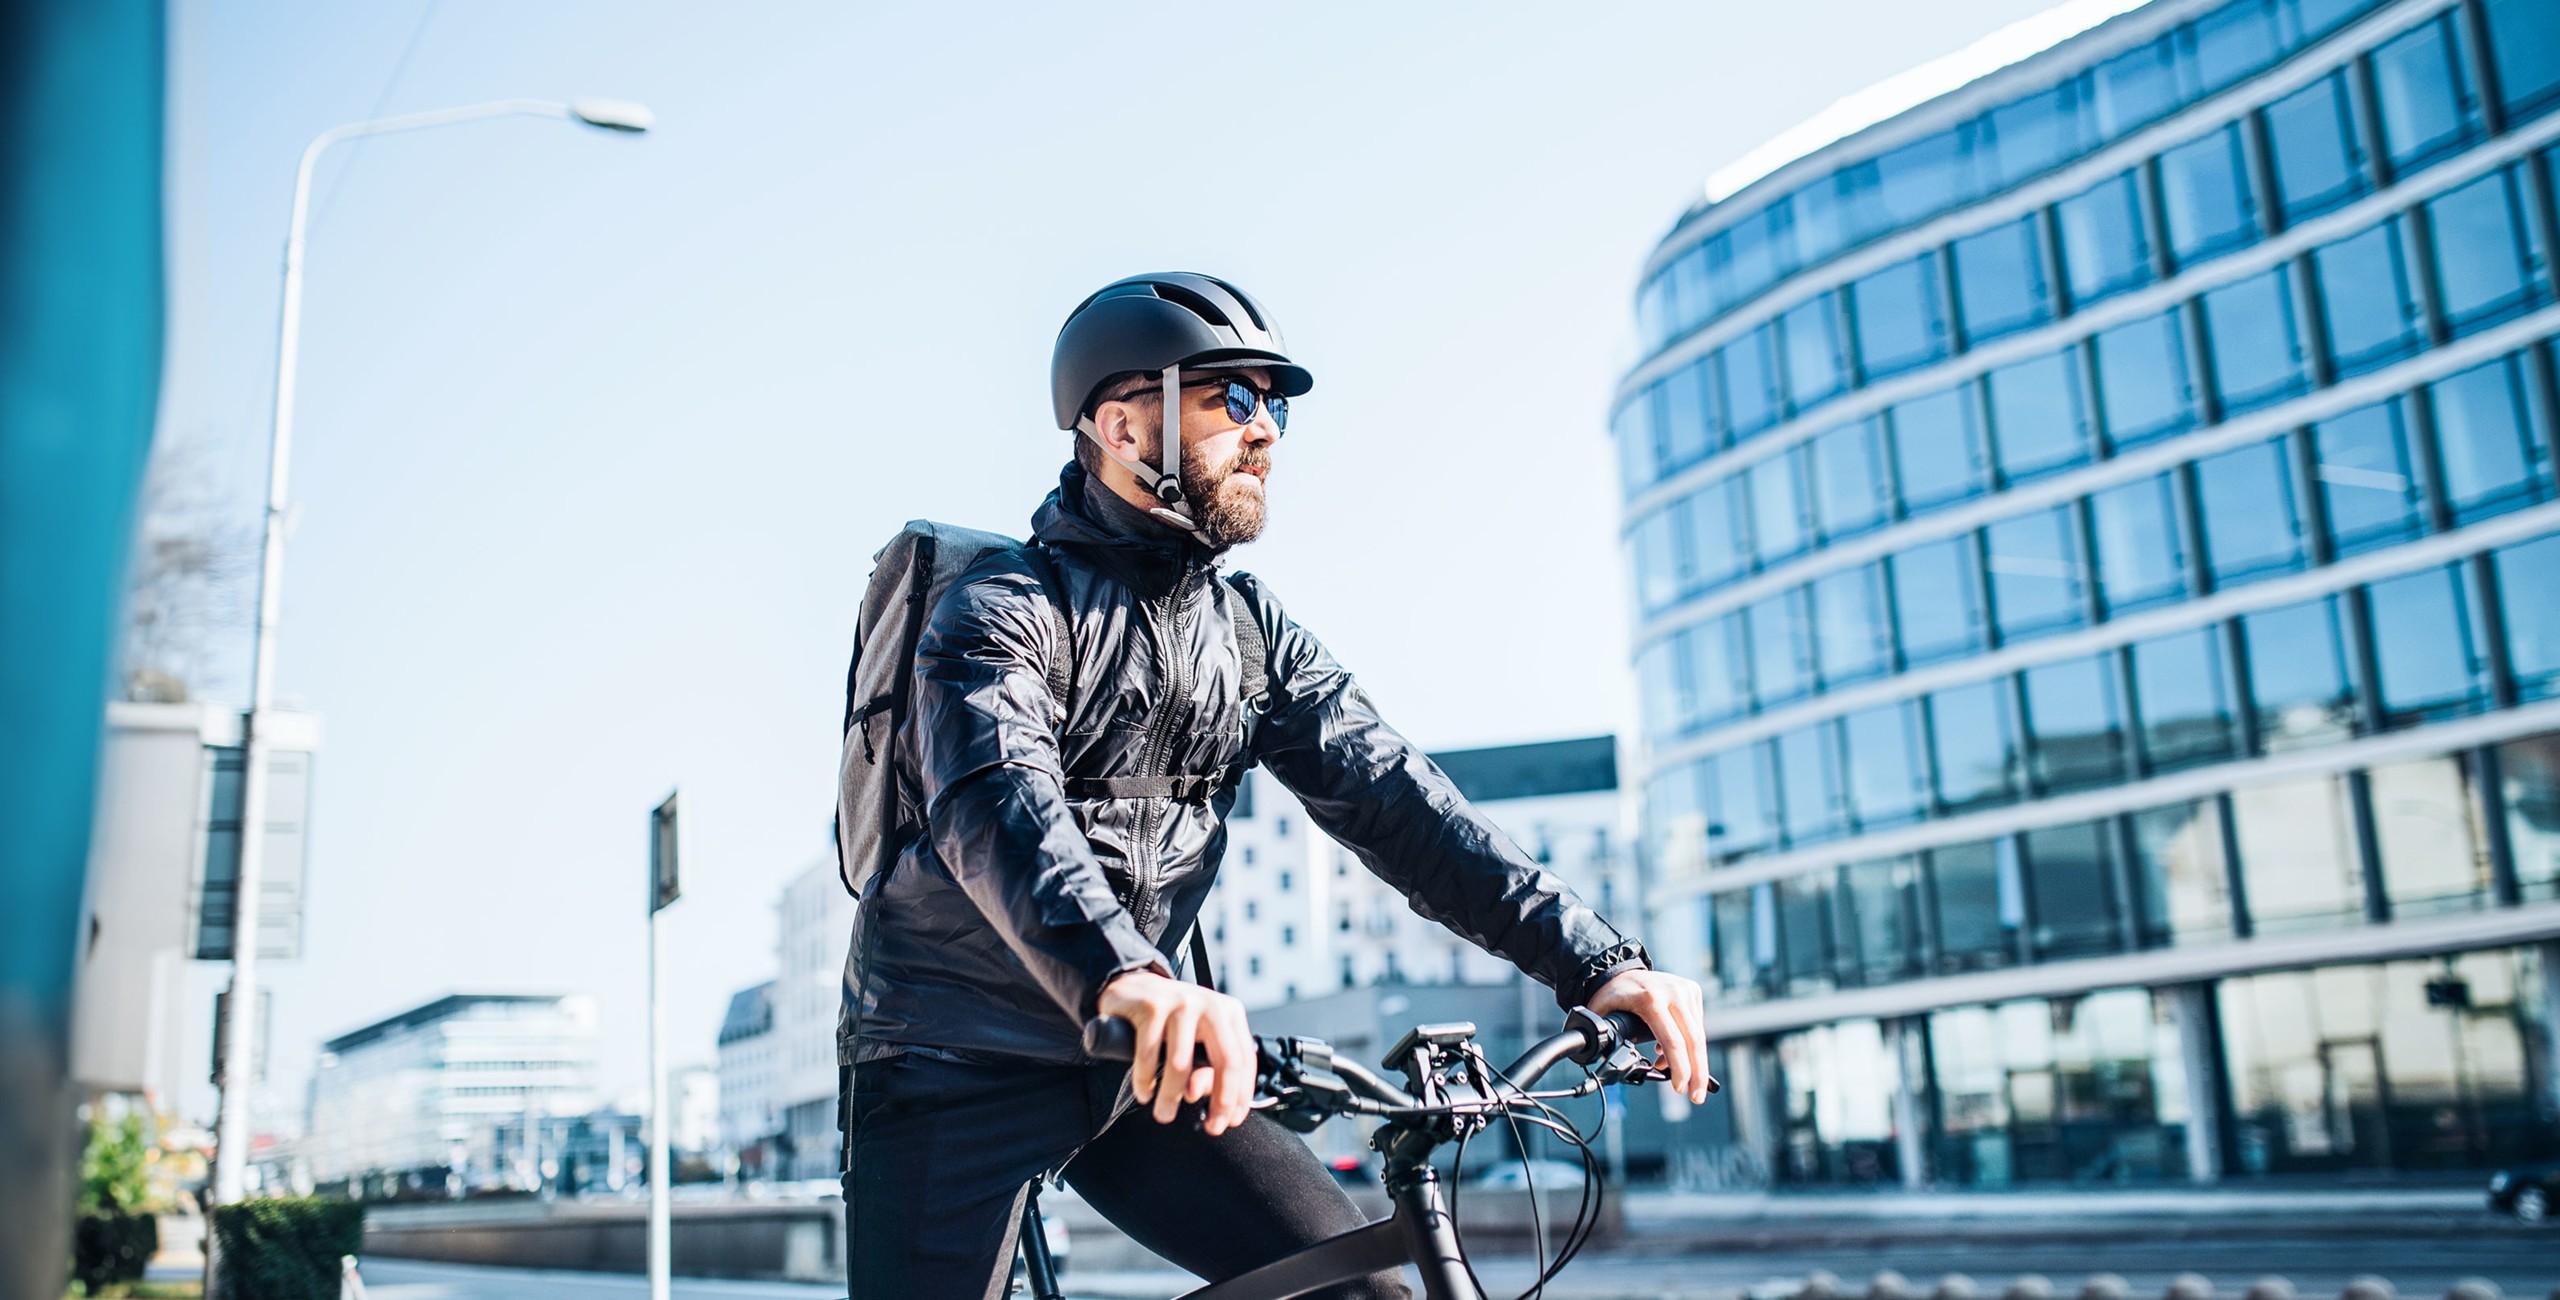 Ein Mann mit schwarzem Helm und Sonnenbrille steht mit seinem Fahrrad in einer städtischen Umgebung.